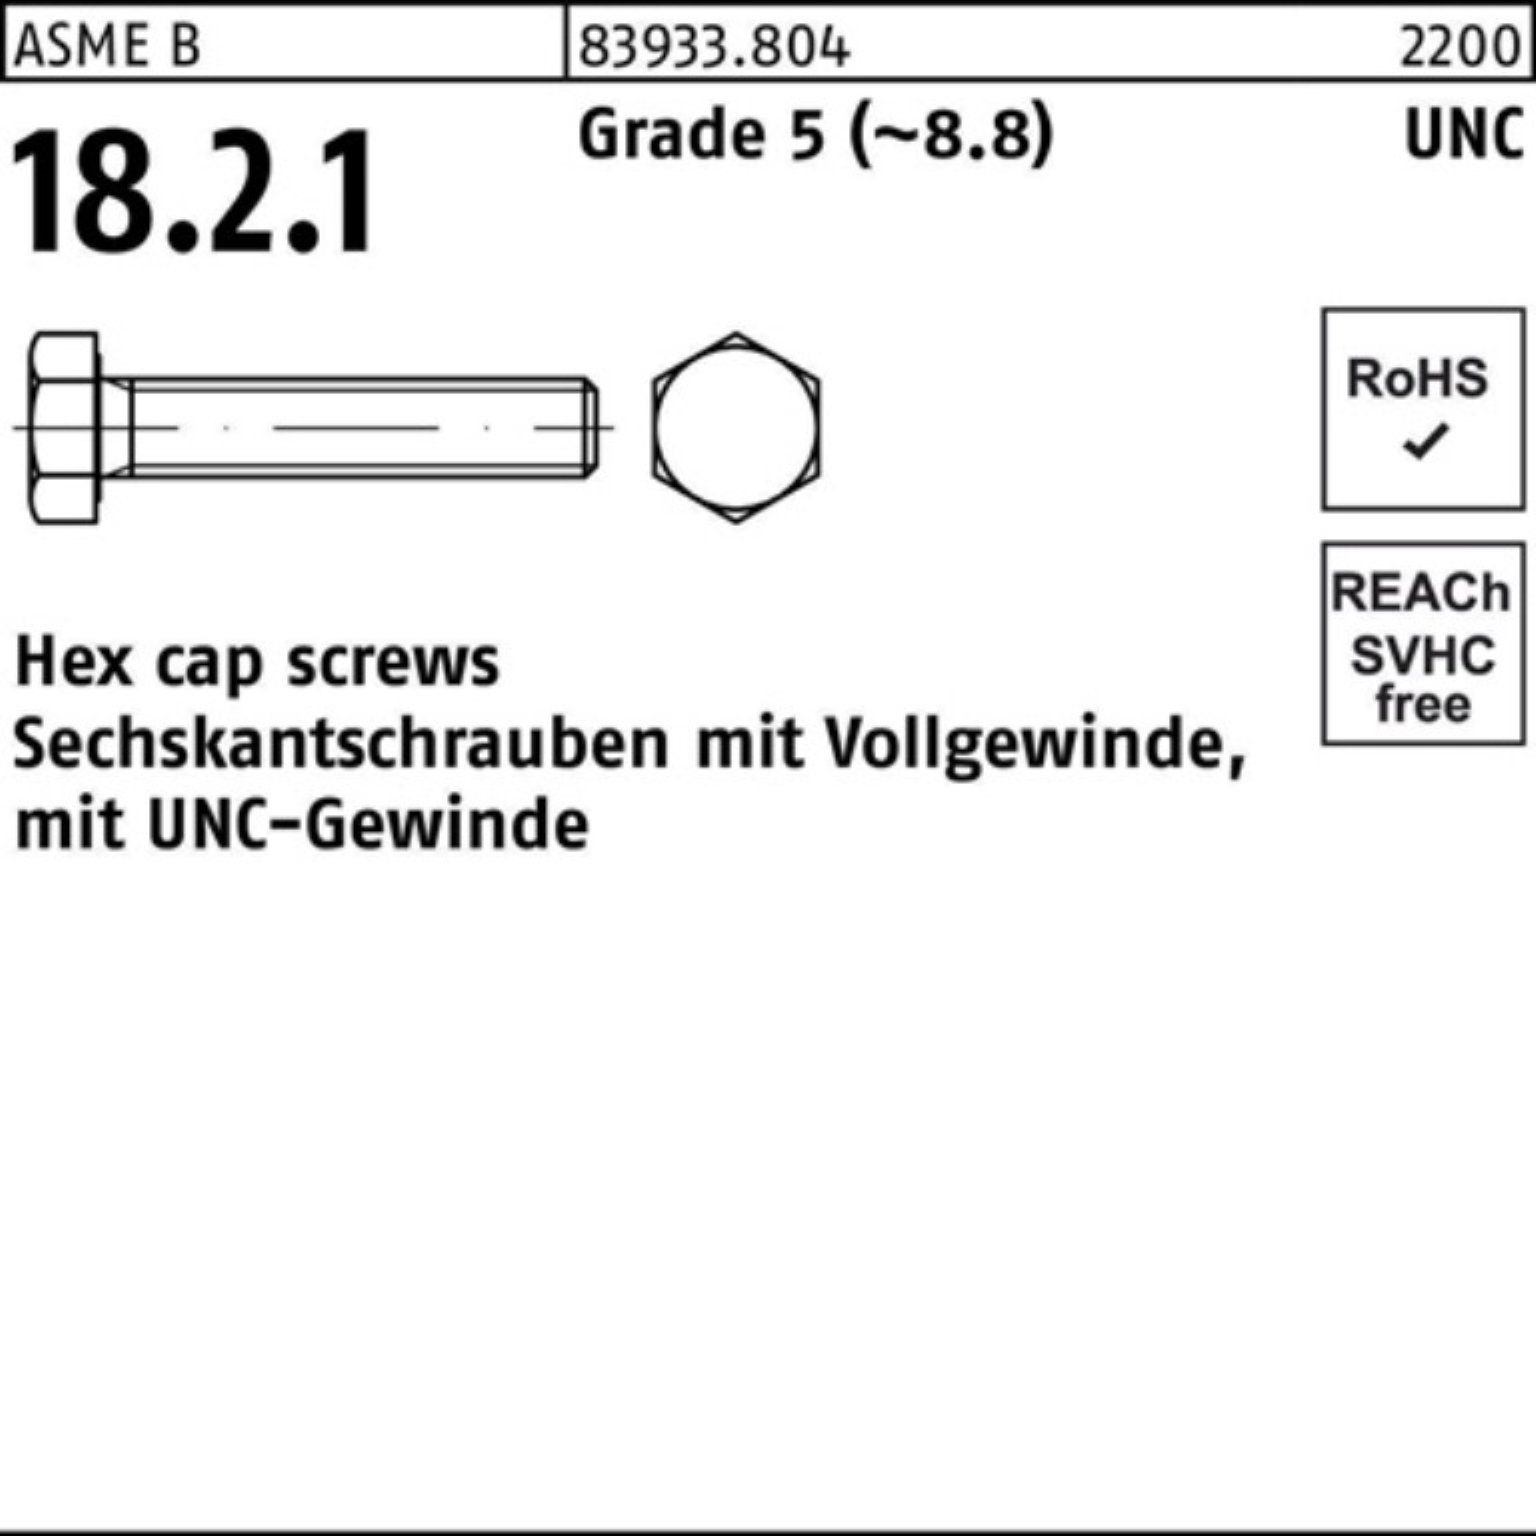 Reyher Sechskantschraube 100er Pack Sechskantschraube R 83933 UNC-Gewinde VG 1/2x 3/4 Grade 5